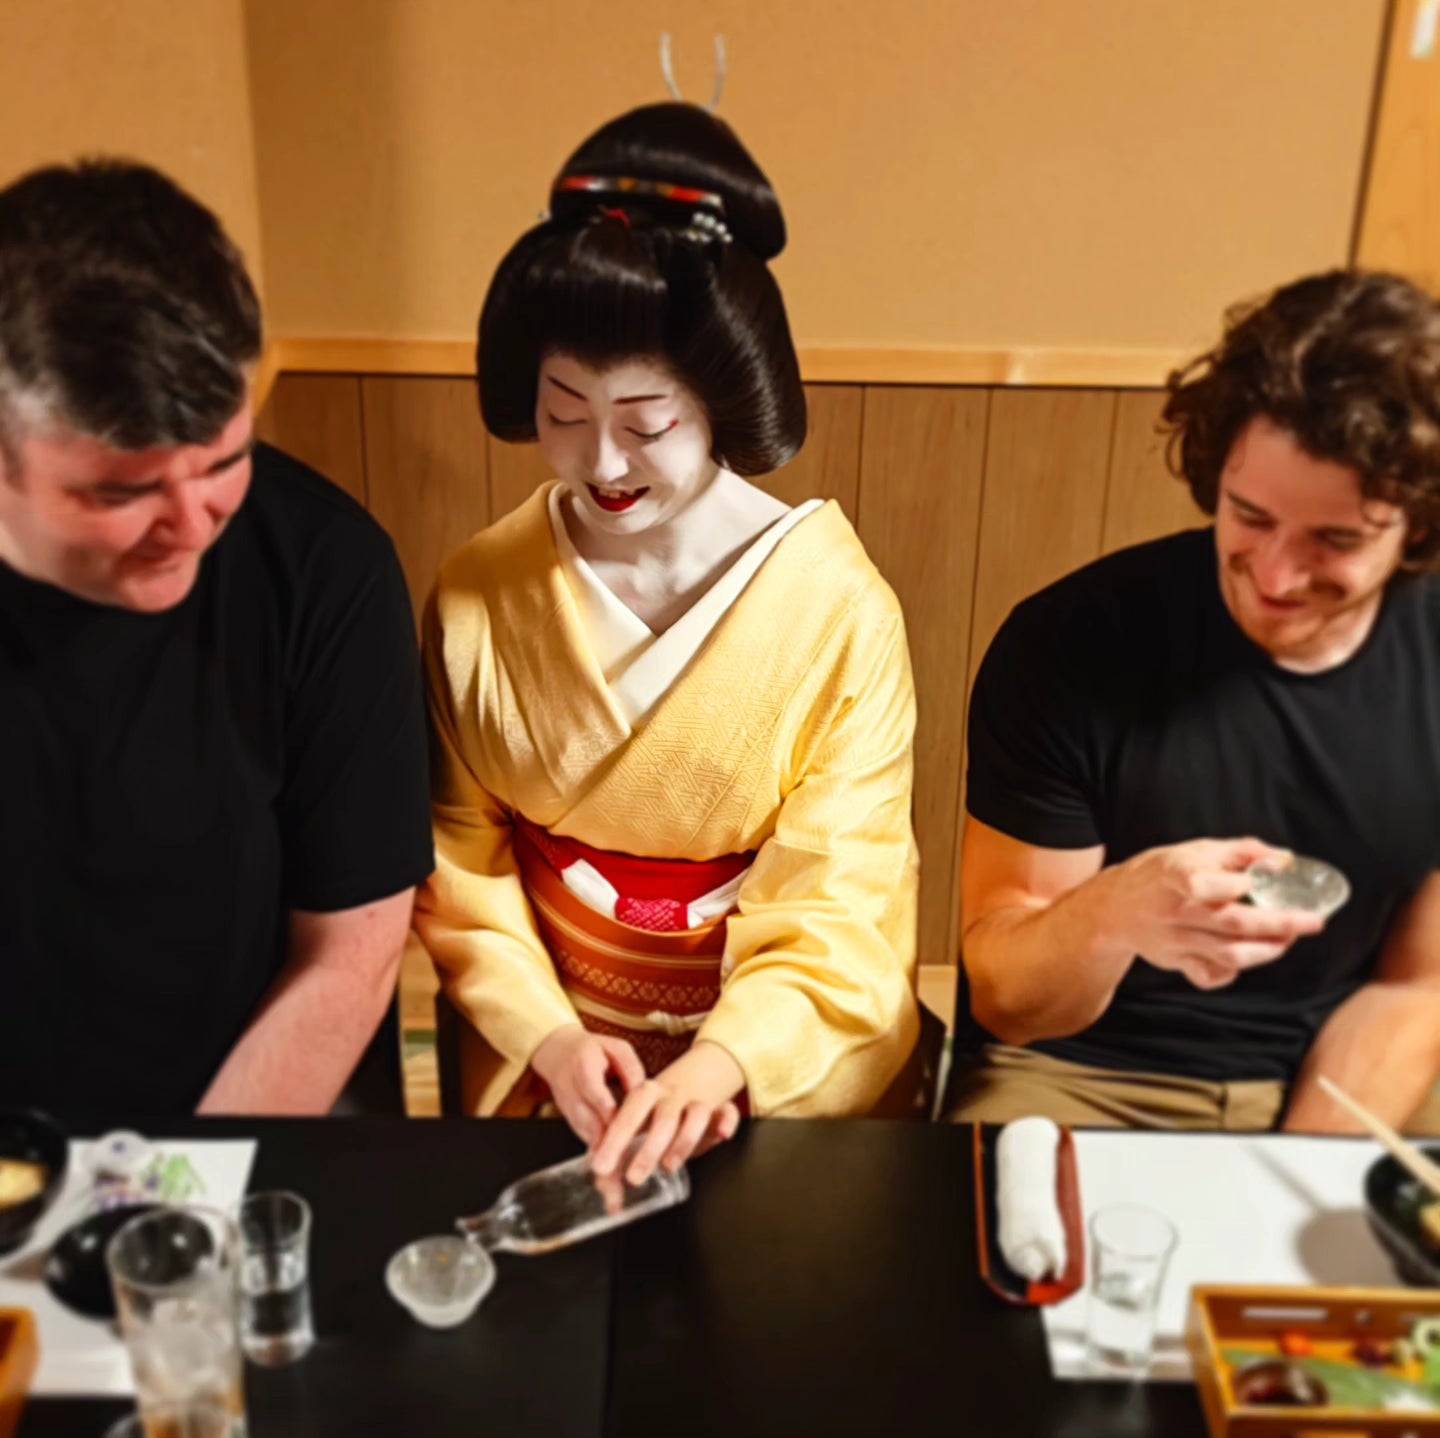 Dine with the Geisha